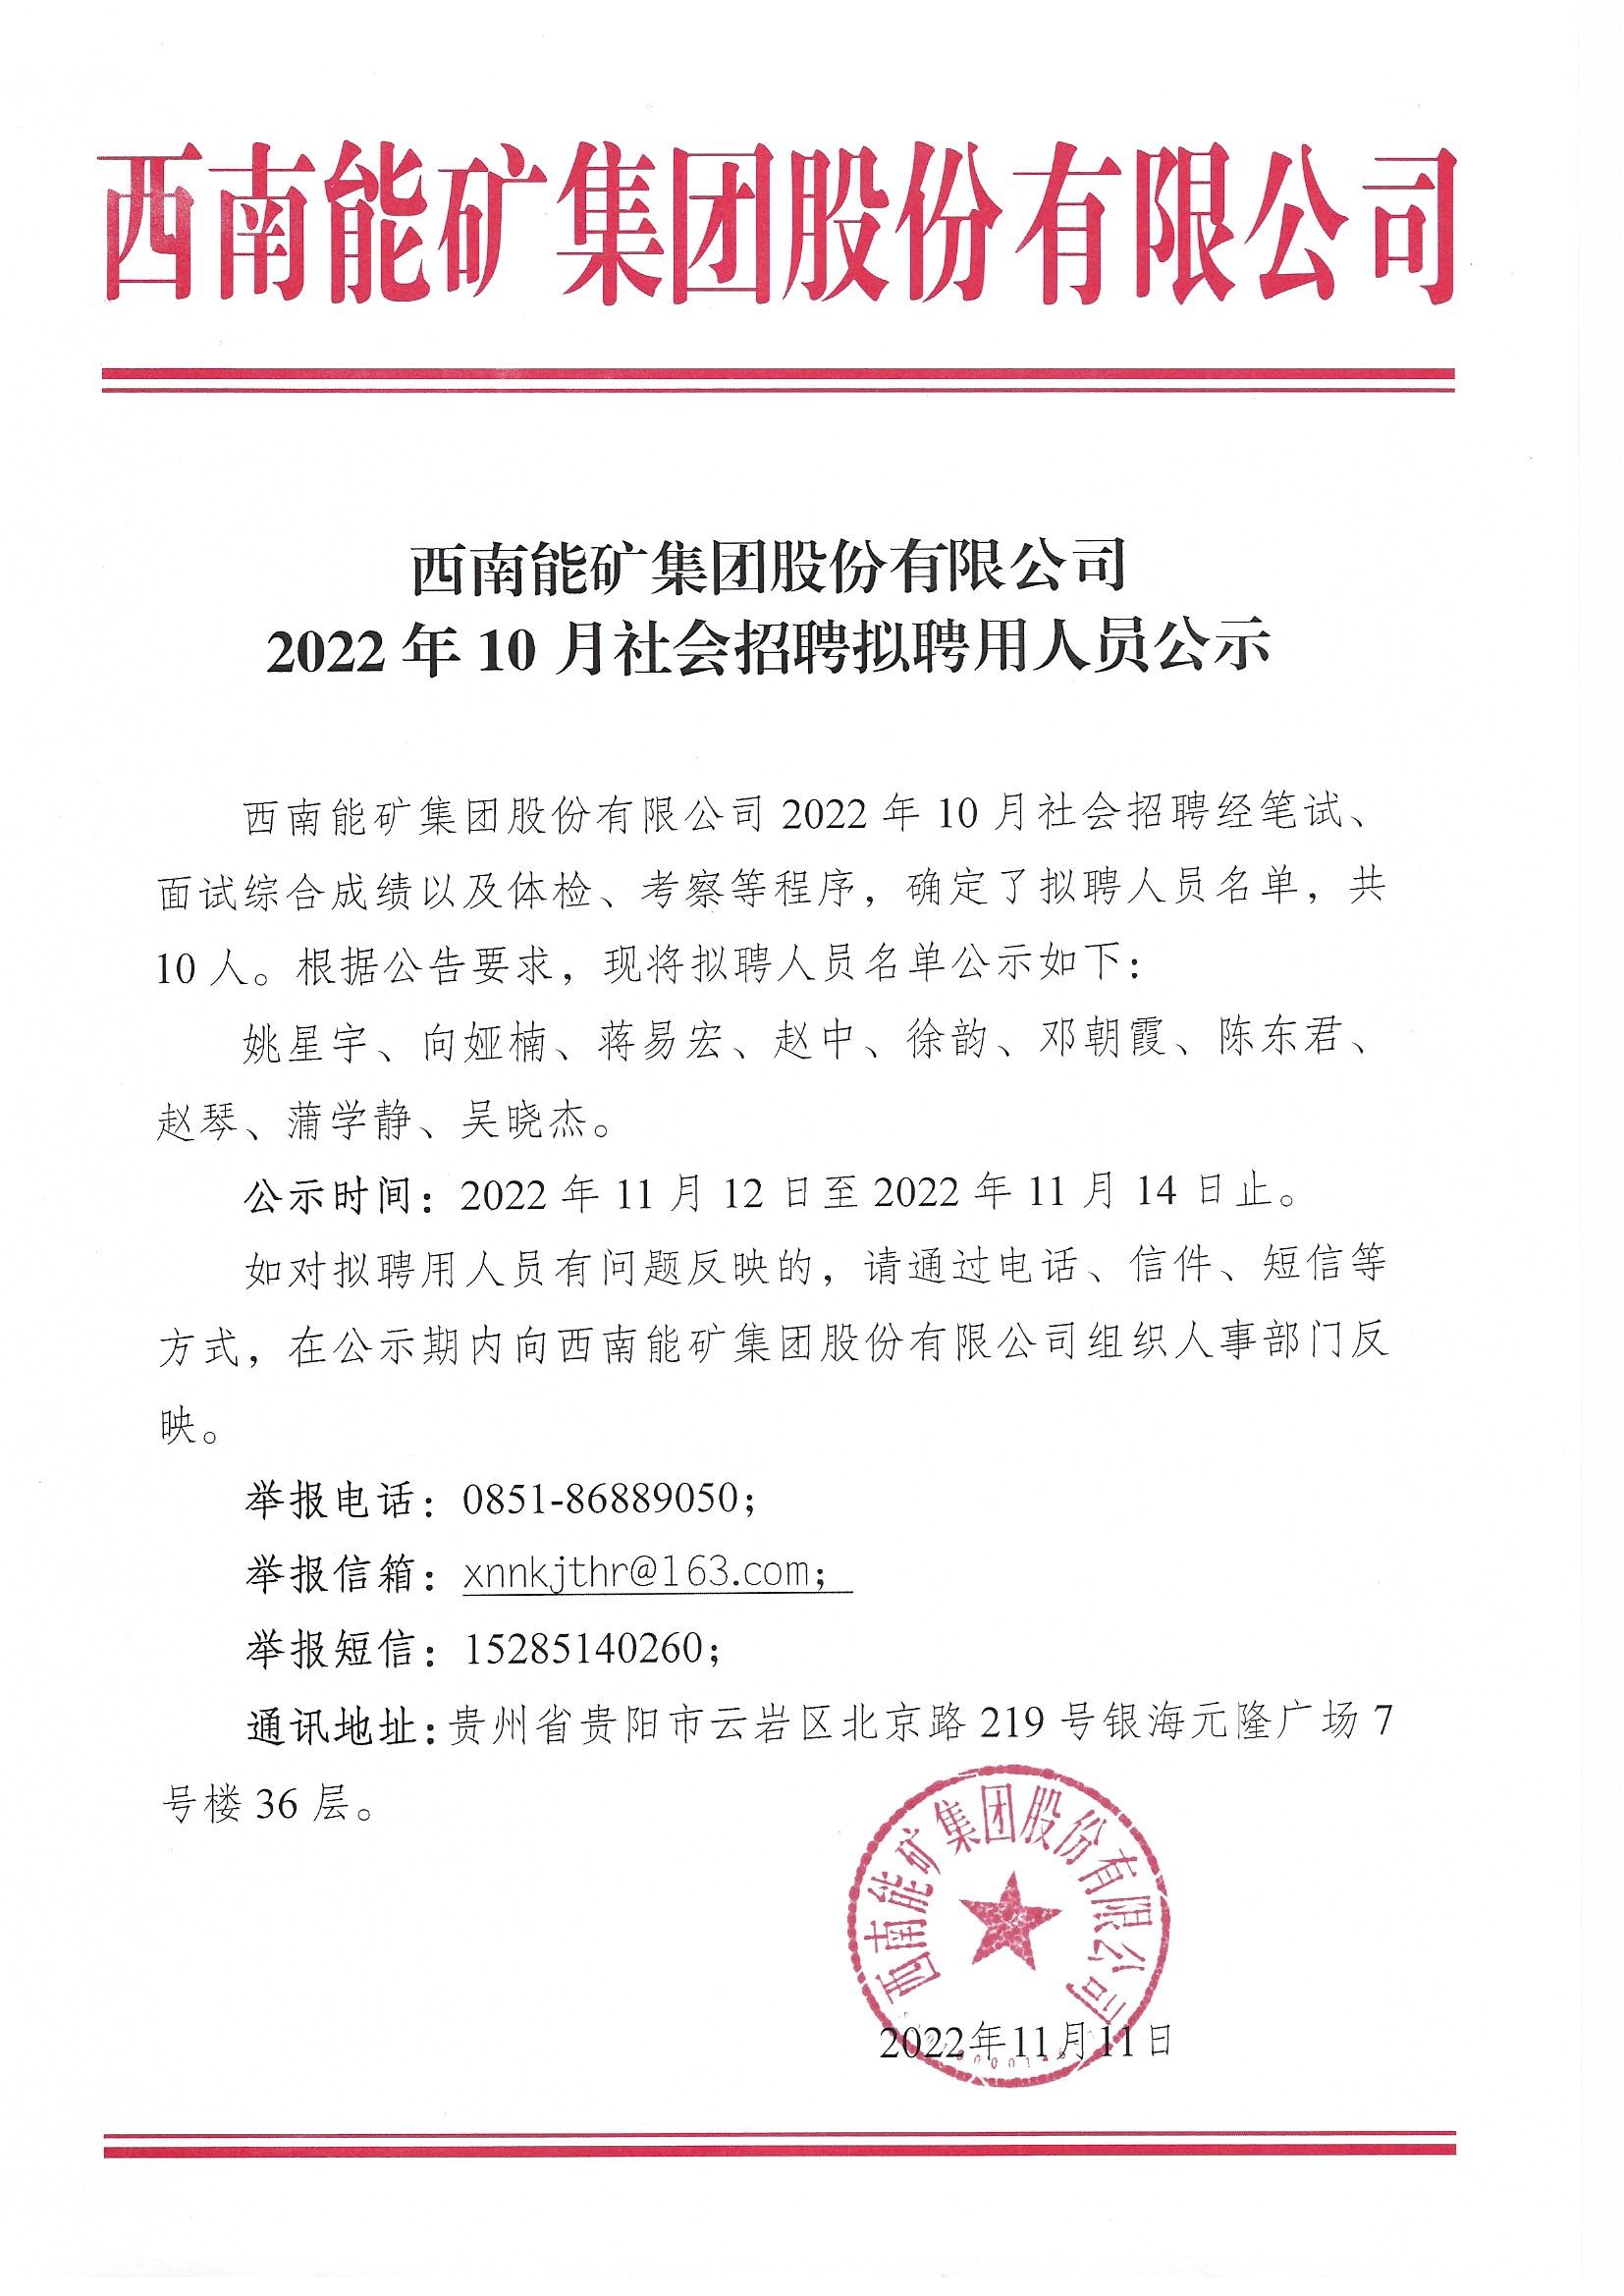 西南能矿集团股份有限公司2022年10月社会招聘拟聘用人员公示.jpg